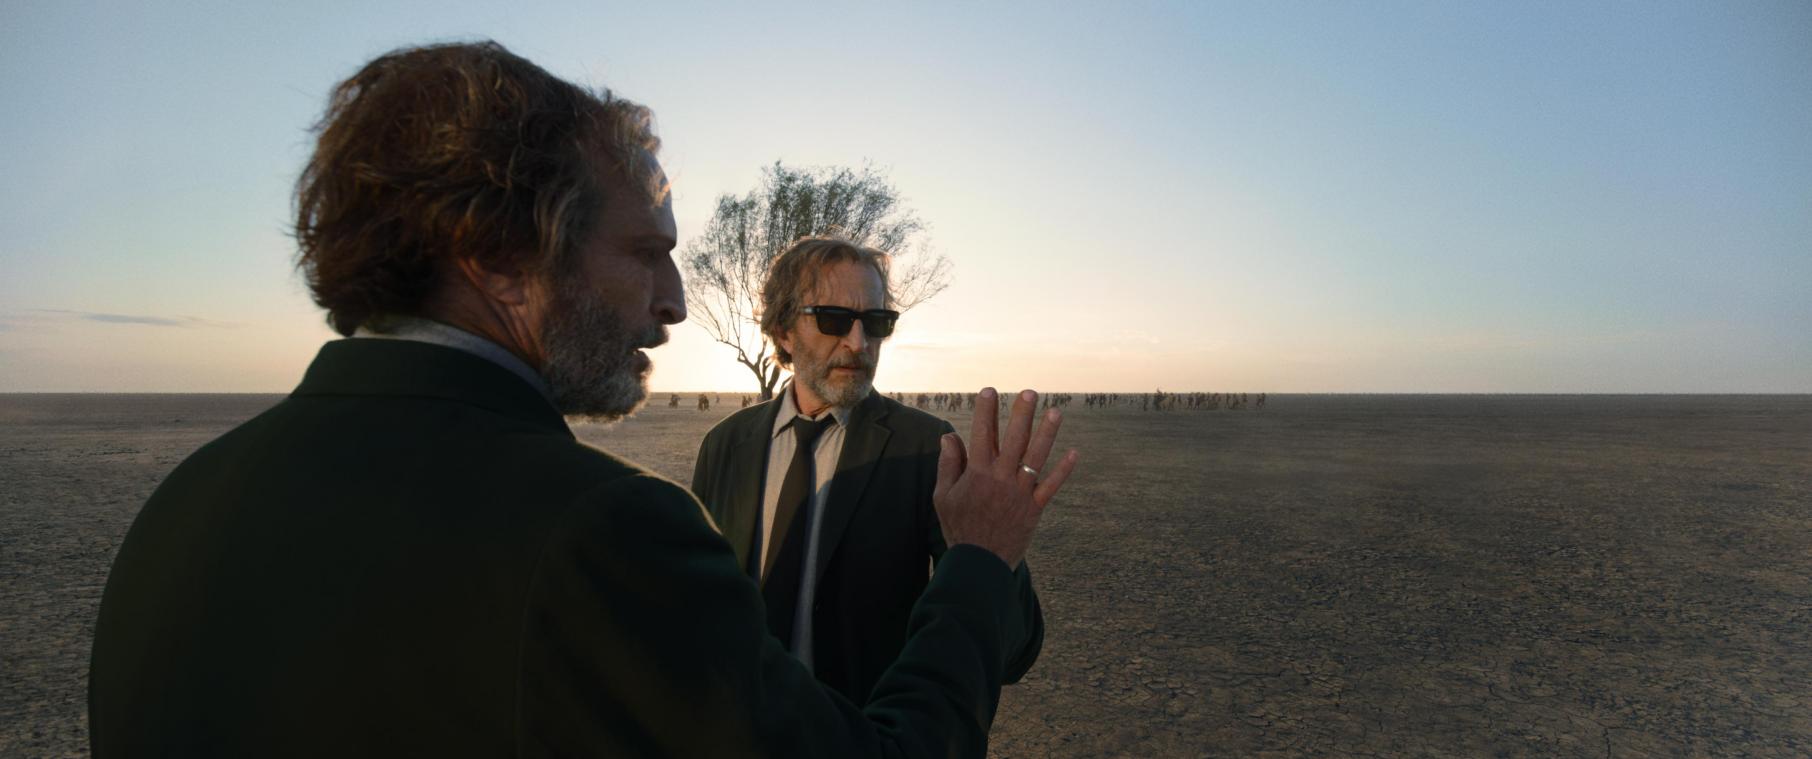 ‘Bardo’, la quête sprirituelle d’Alejandro Iñárritu: «J’aimerais vivre ma mort consciemment»